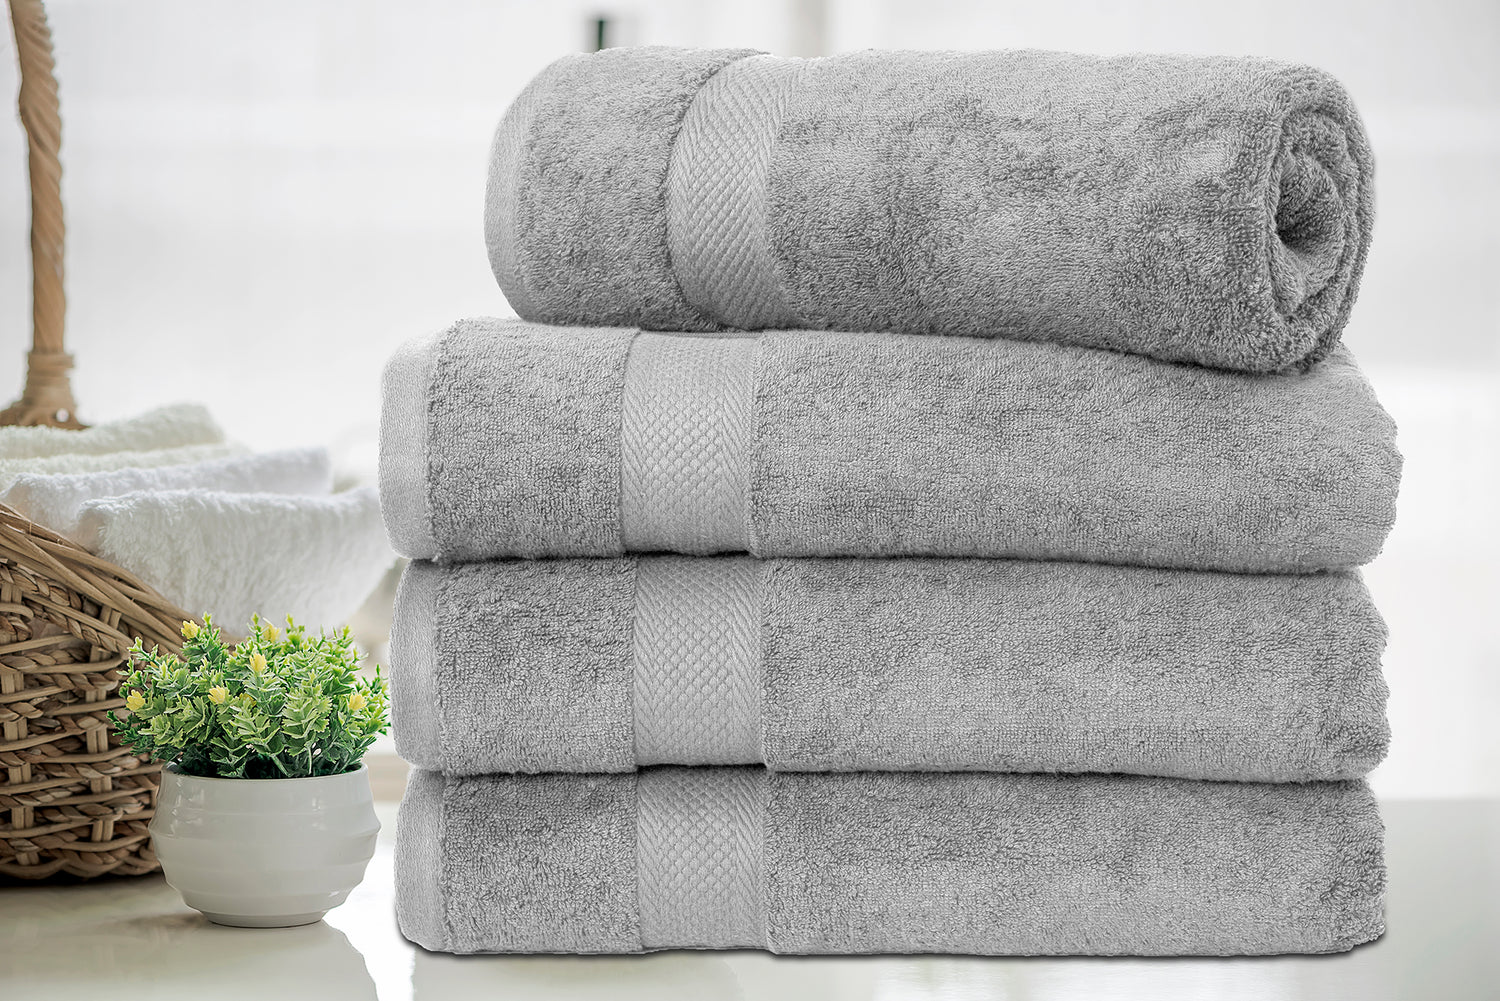 Central Park Studios Grace Textured Zero Twist Set of 4 Bath Towels in Bleached Denim, Size: 4 Pack